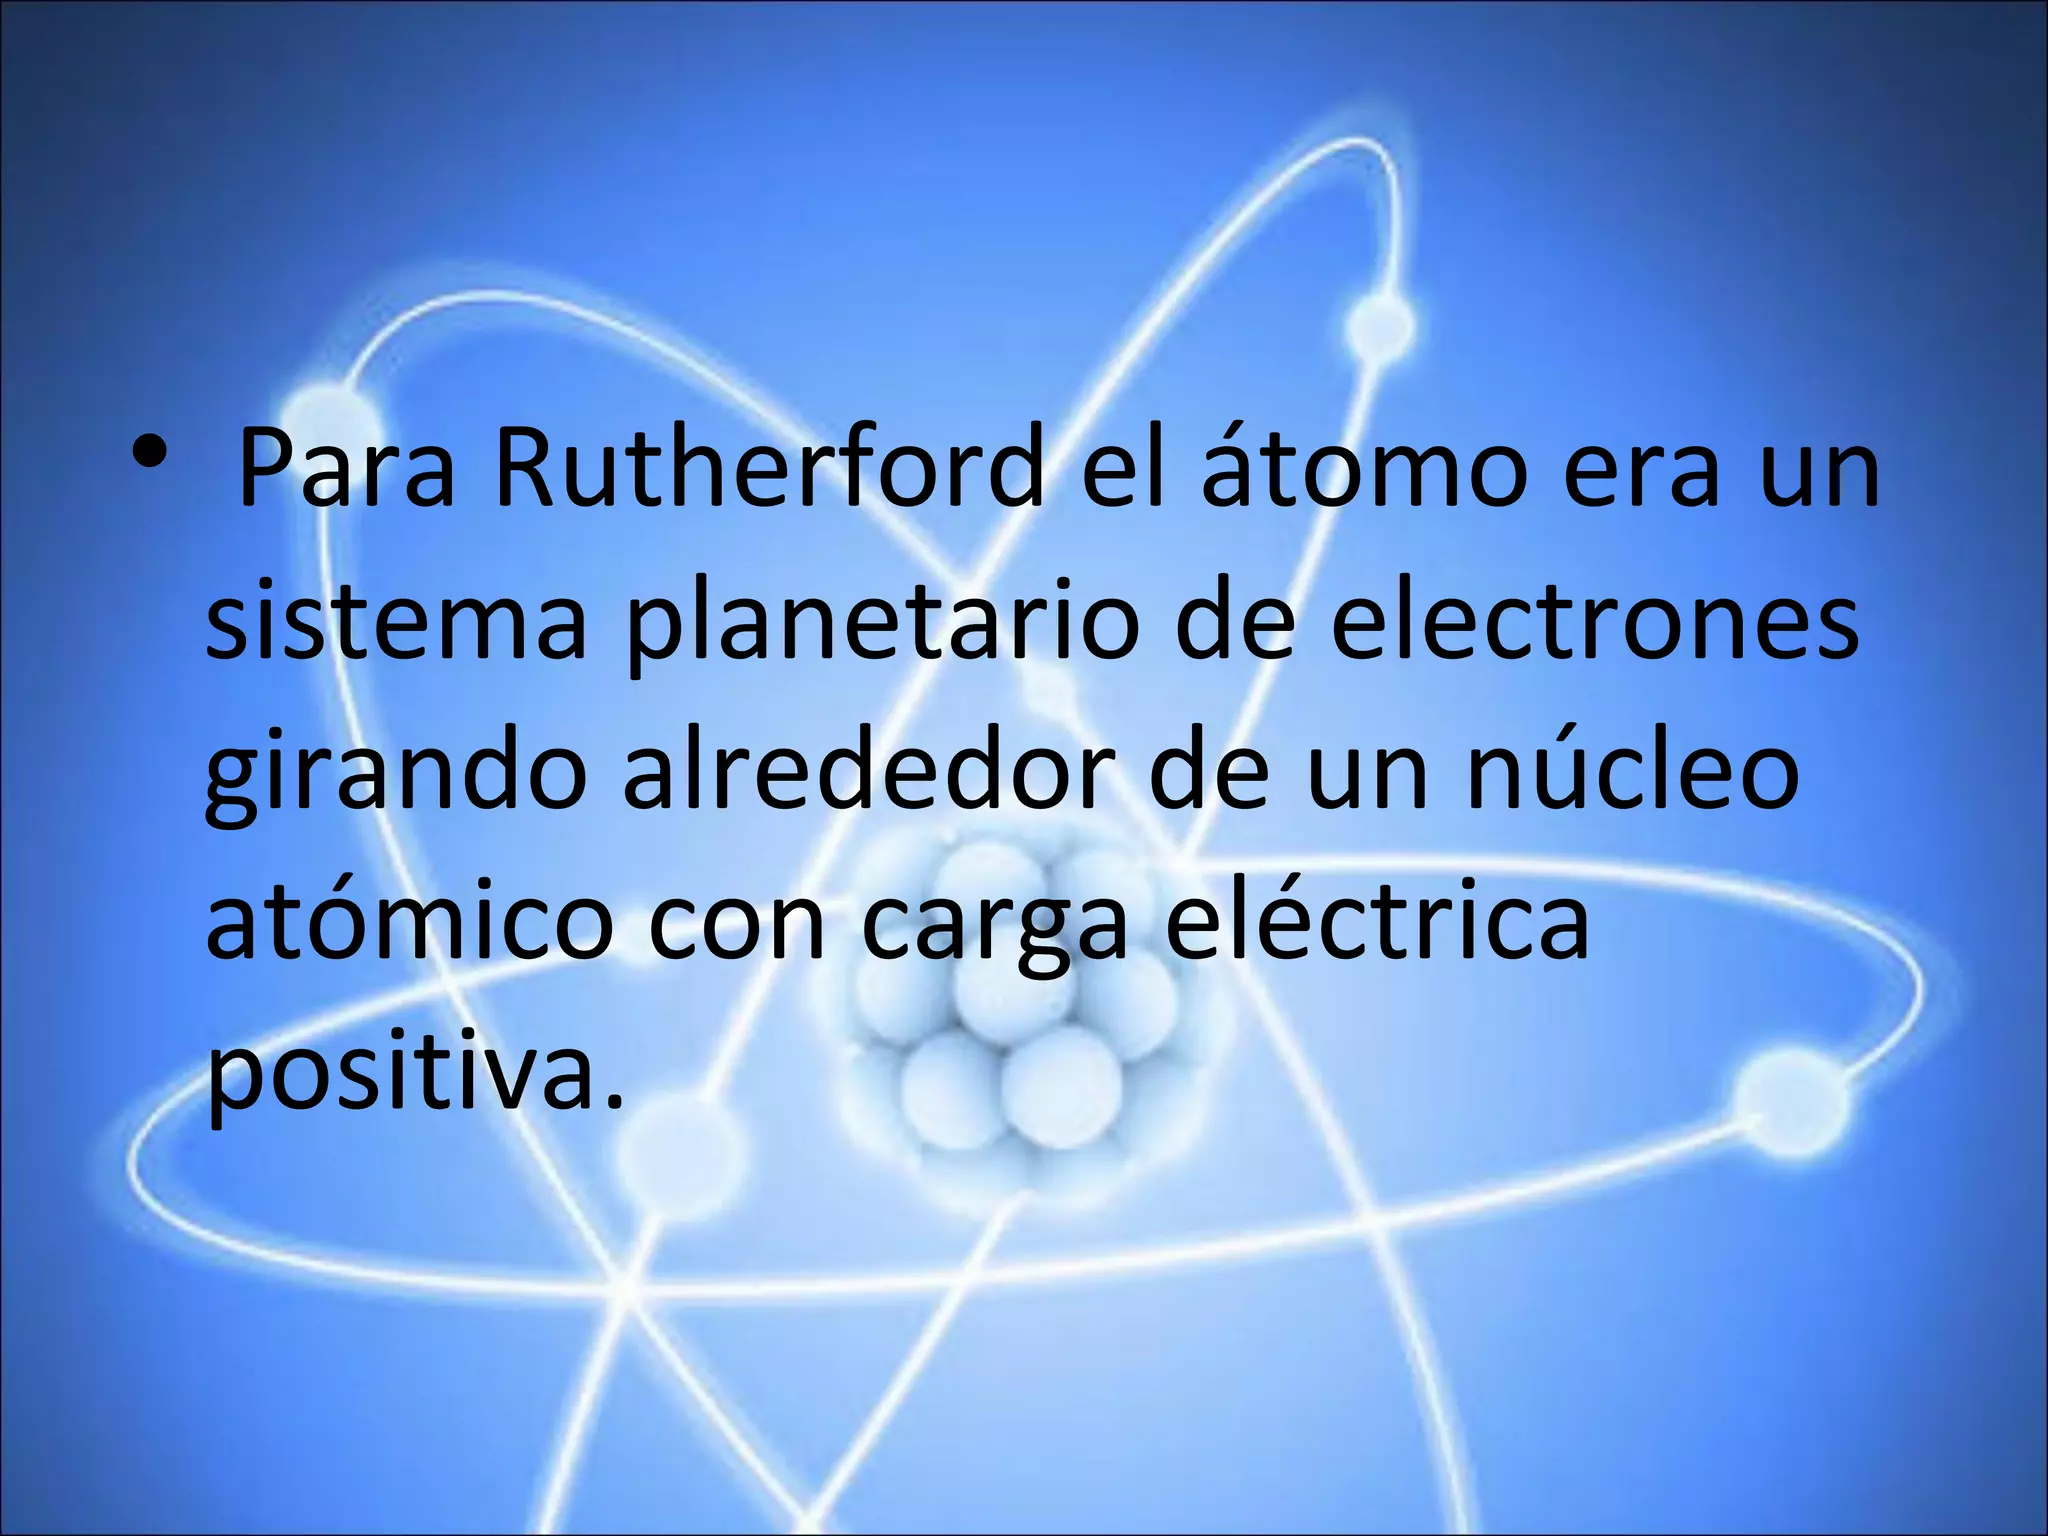 Modelo atomico de rutherford